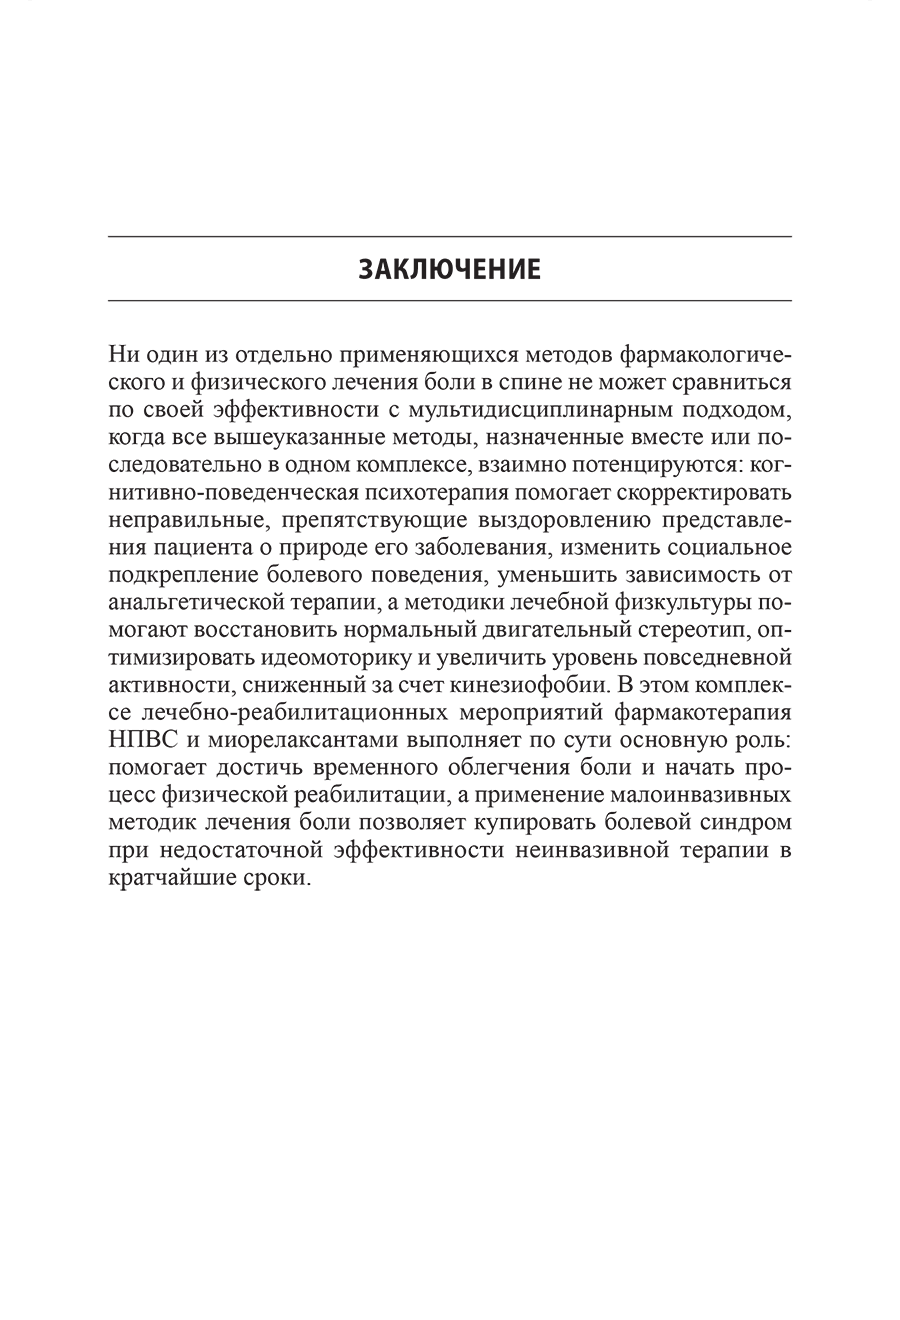 Пример страницы из книги "Боль в спине" - В. А. Епифанов